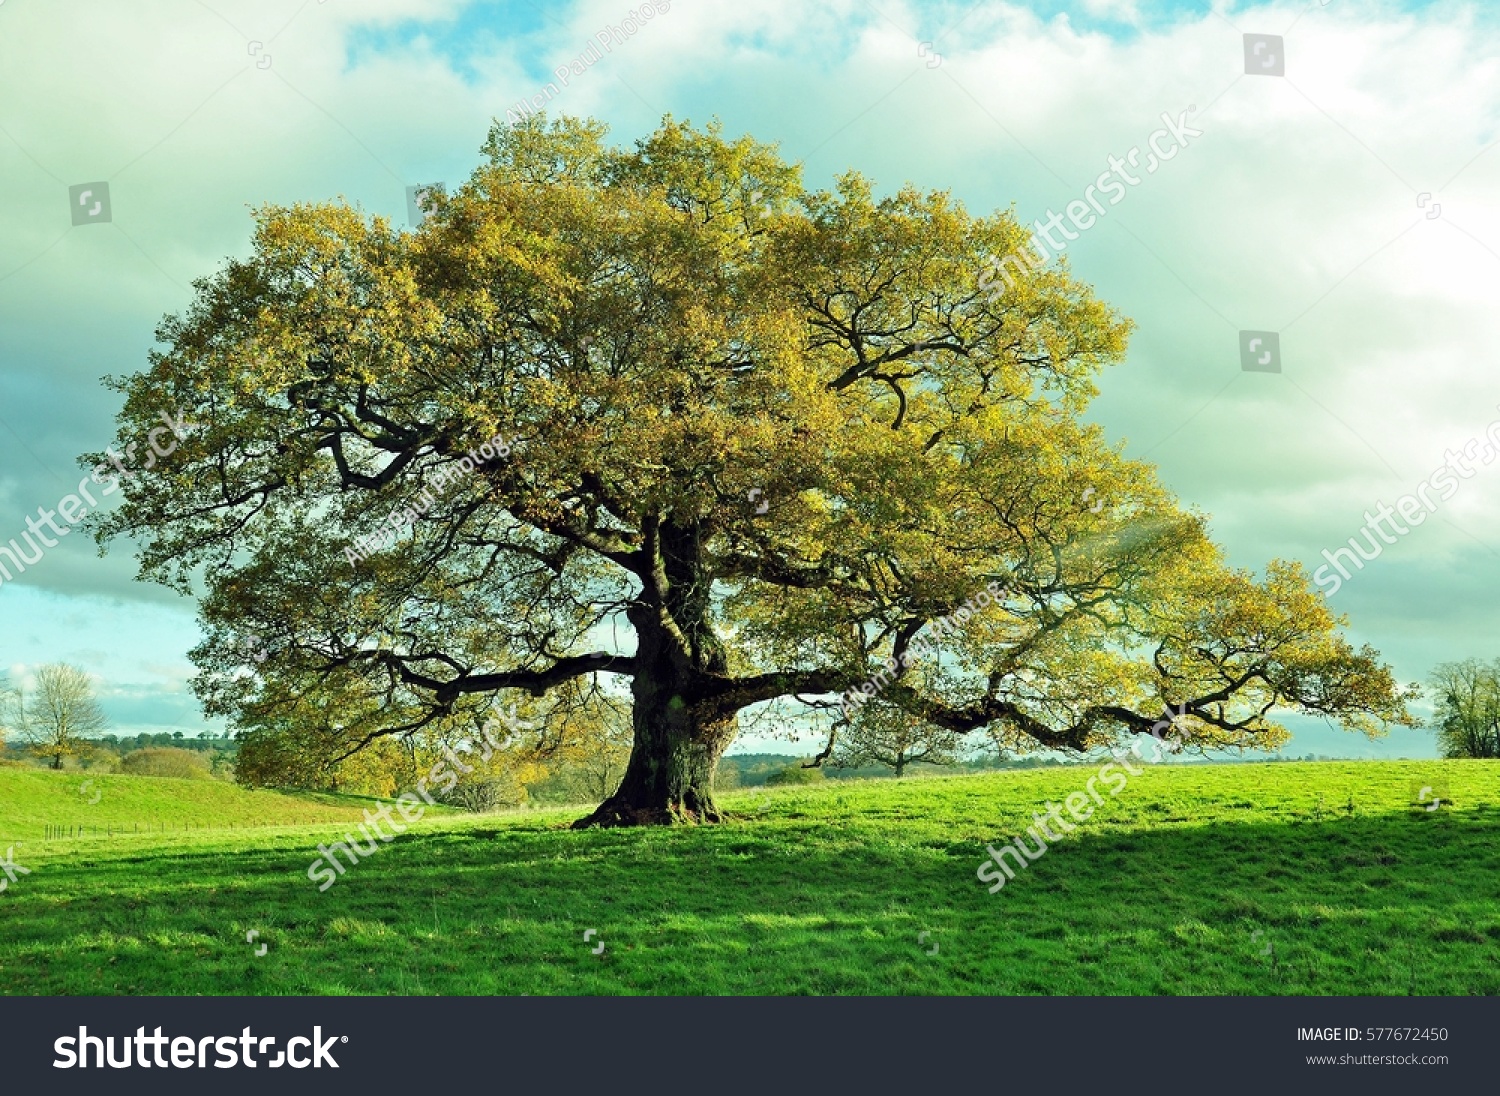 Old oak tree in an English meadow. #577672450